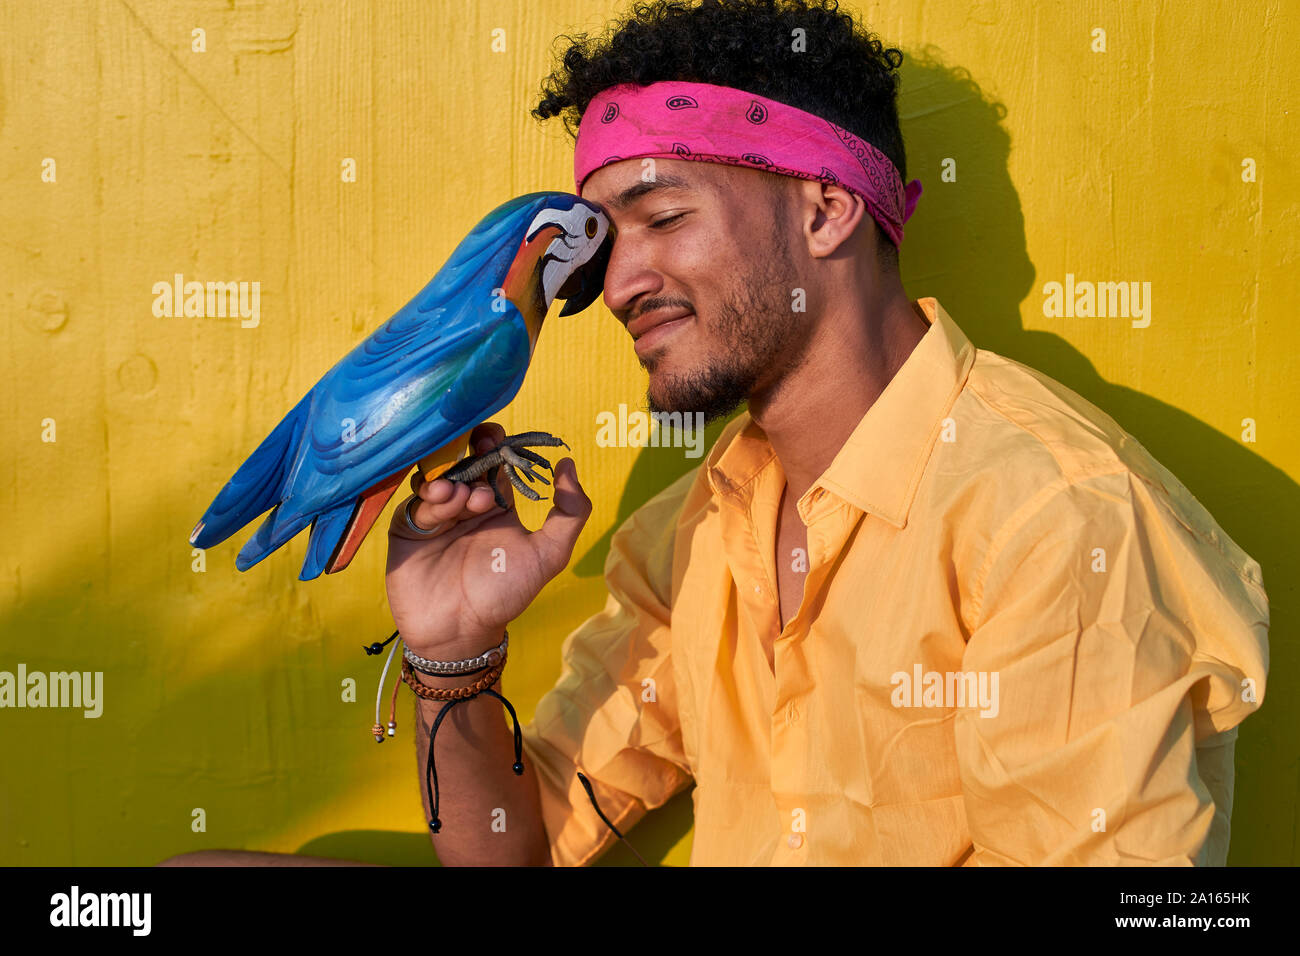 Junge schwarze Mann mit einem Papagei vor der gelben wand Posieren Stockfoto